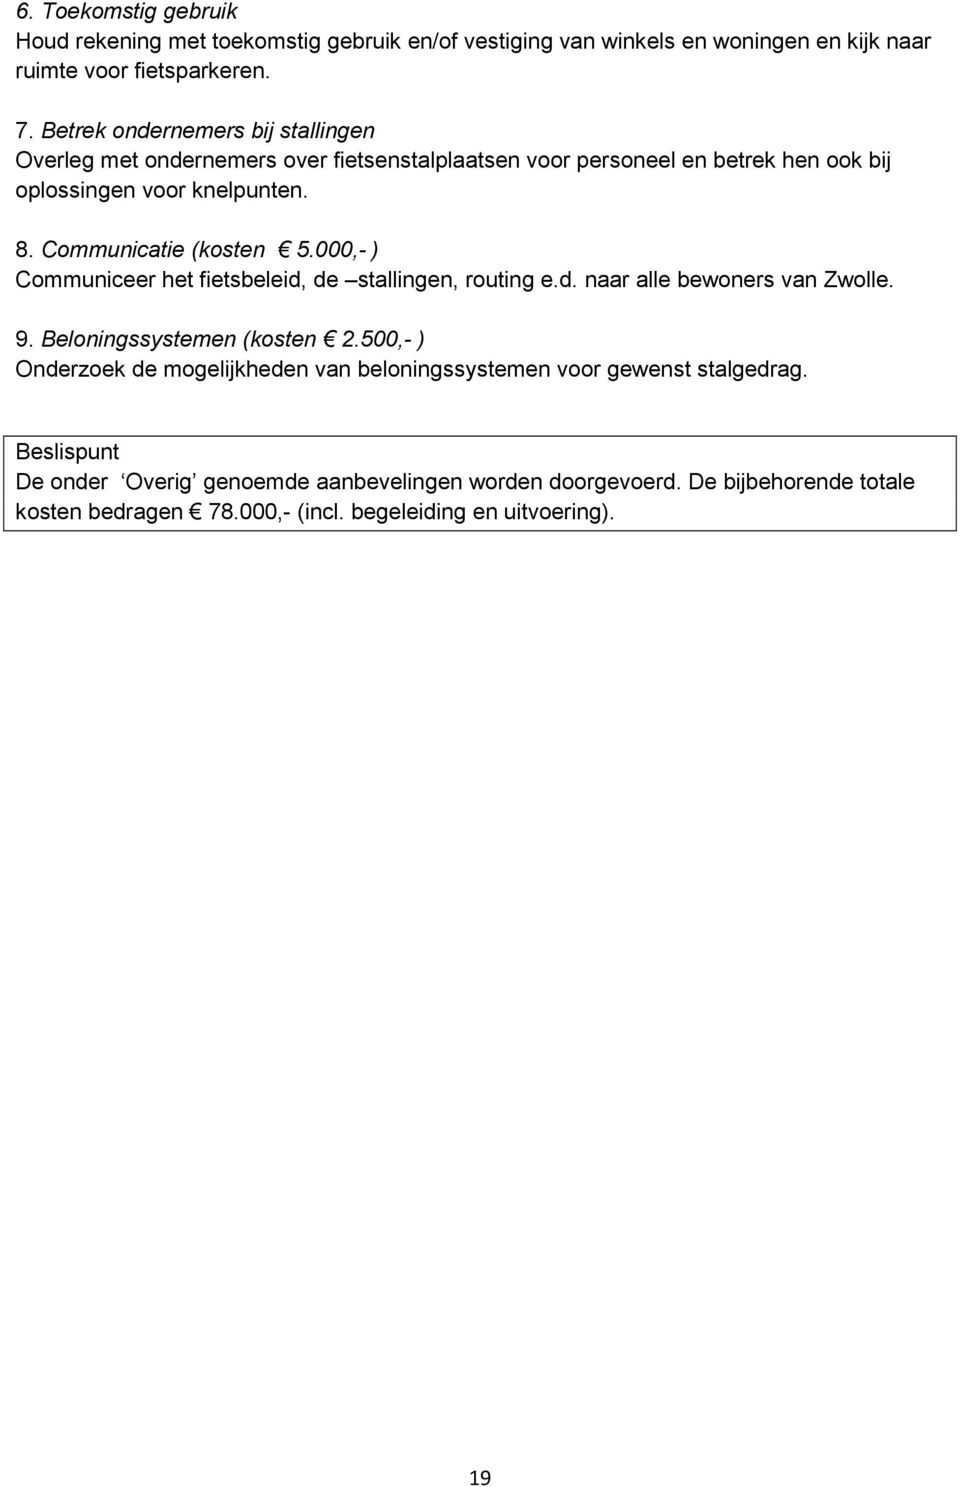 Communicatie (kosten 5.000,- ) Communiceer het fietsbeleid, de stallingen, routing e.d. naar alle bewoners van Zwolle. 9. Beloningssystemen (kosten 2.